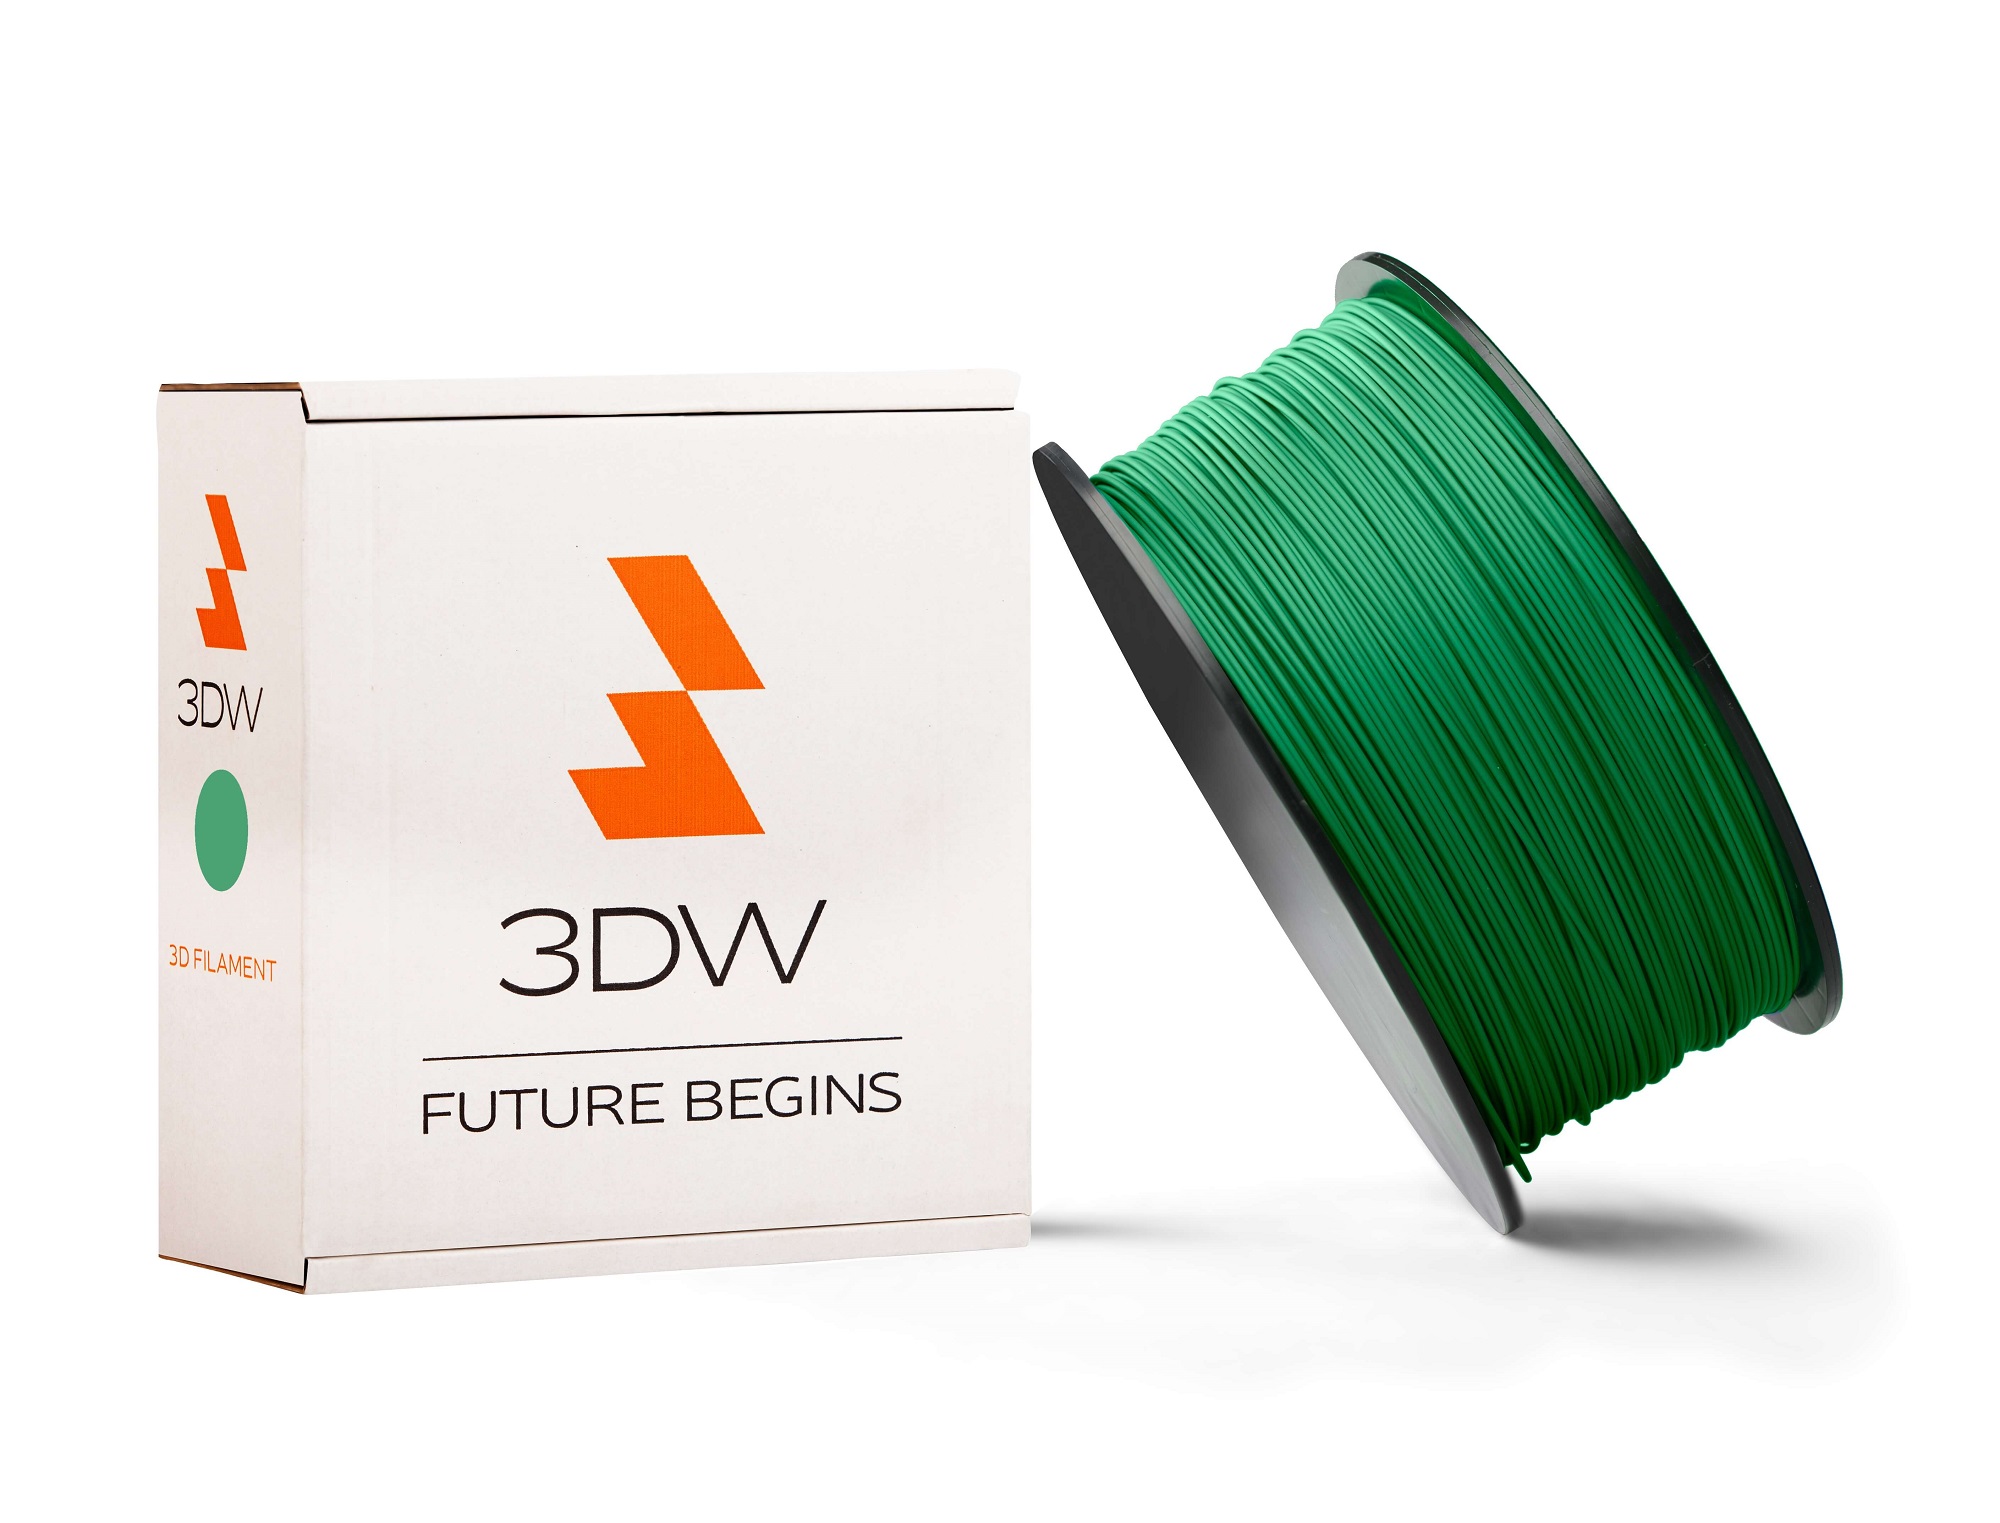 3DW - ABS filament 1,75mm zelená, 0,5 kg,tisk 220-250°C